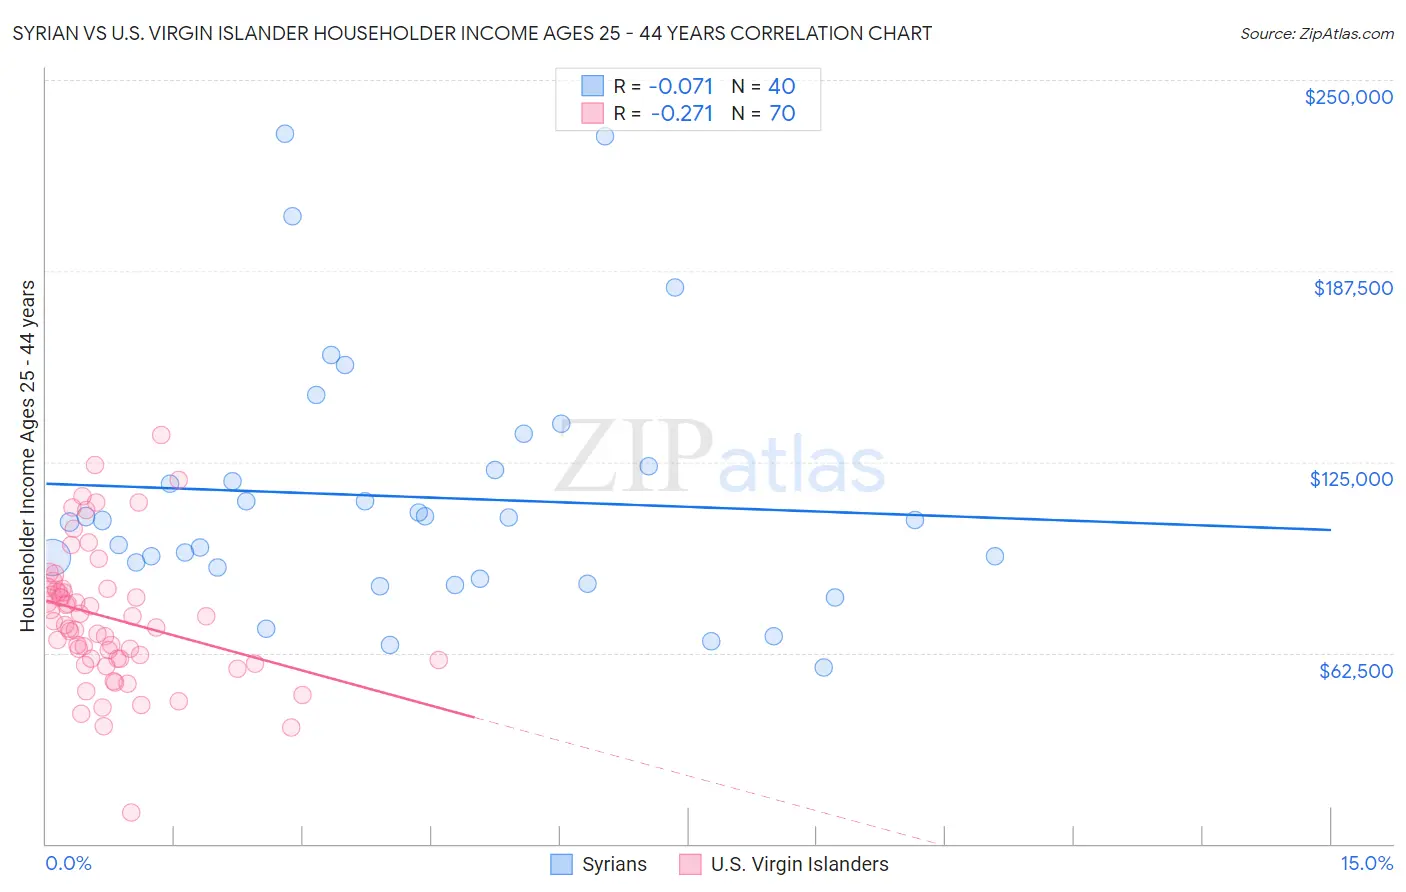 Syrian vs U.S. Virgin Islander Householder Income Ages 25 - 44 years